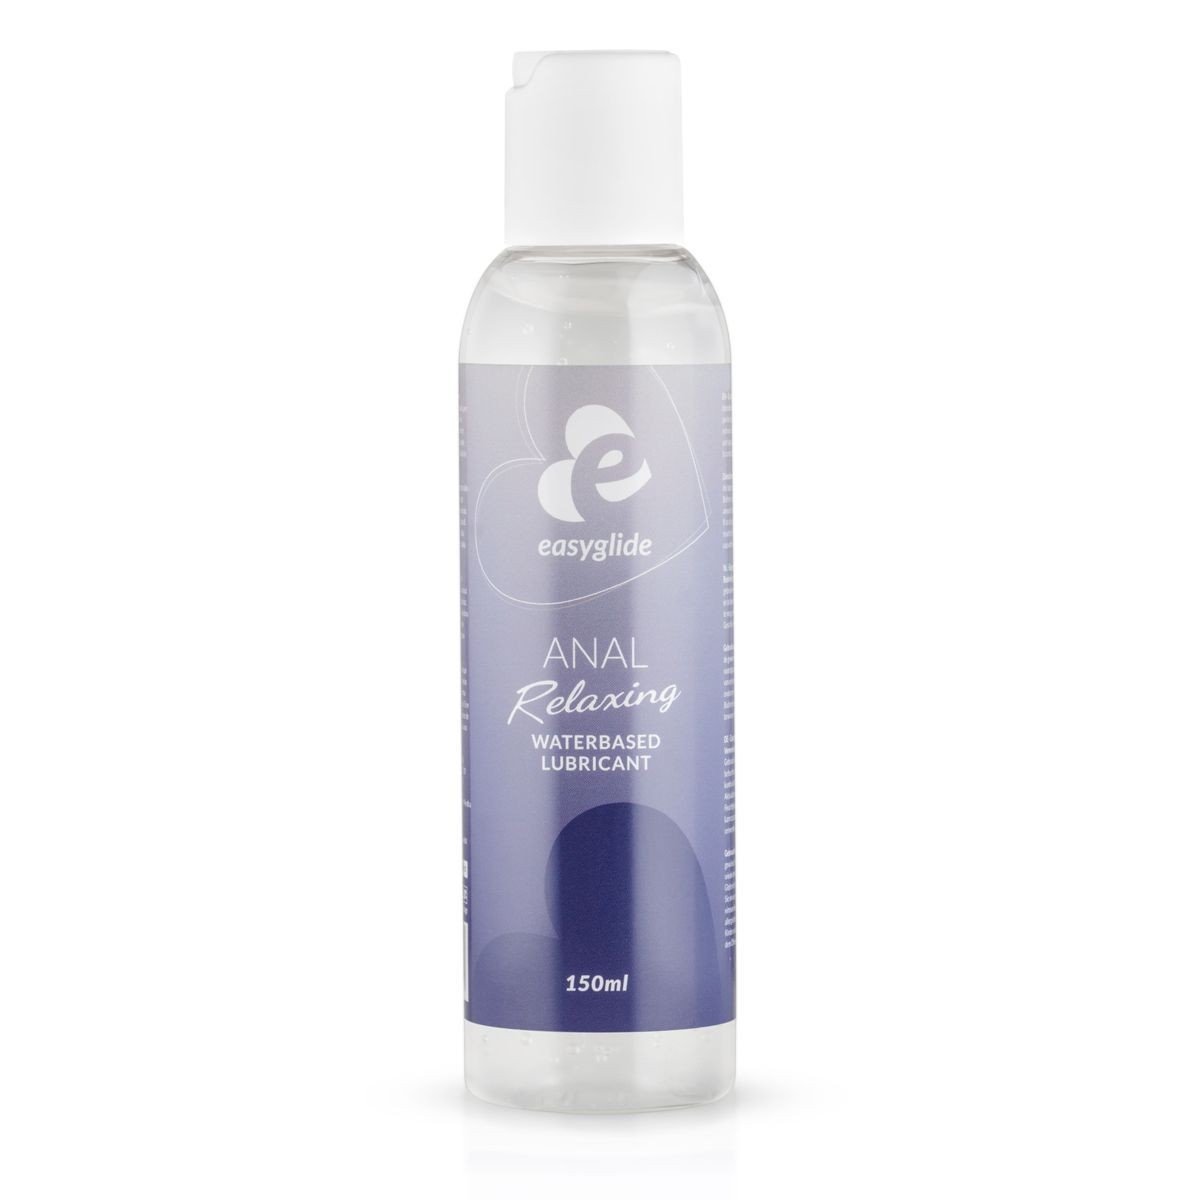 EasyGlide Anal Relaxing Lubricant 150 ml, anální lubrikační gel na vodní bázi